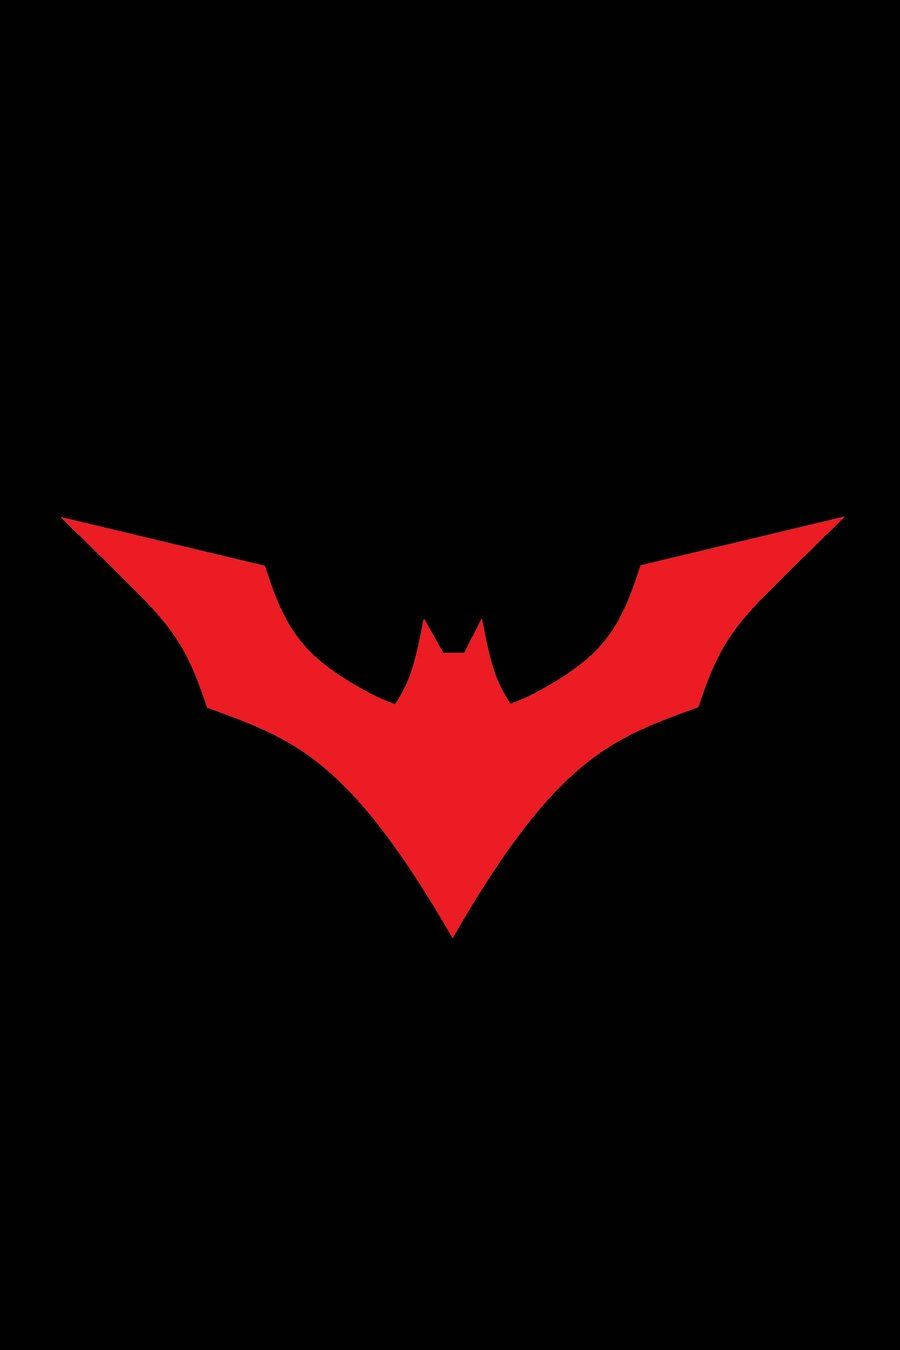 Rödbatman-symbol På Mörk Iphone Bildskärm. Wallpaper